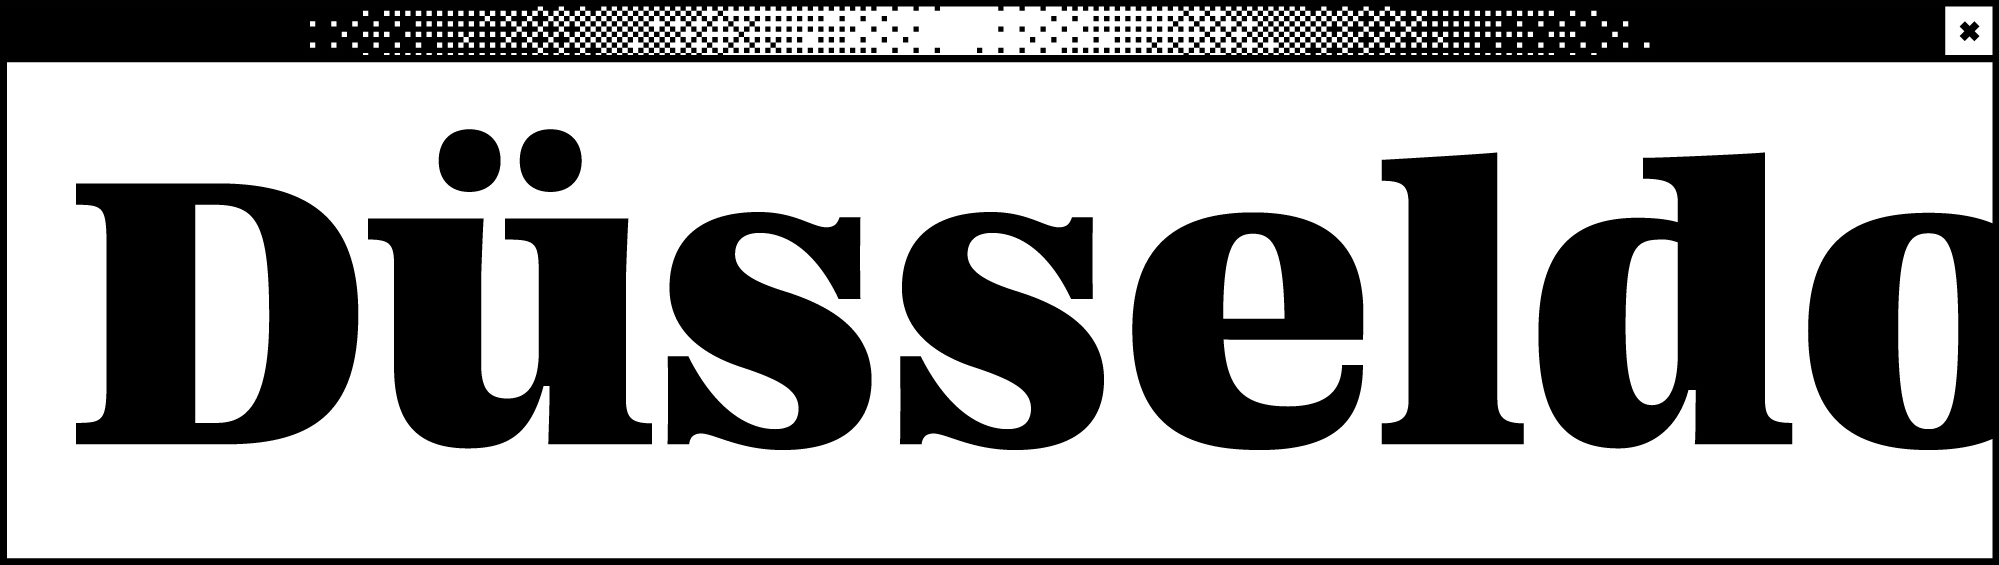 Weißes Browserfenster mit dem Wortabschnitt Düsseldo in der Mitte